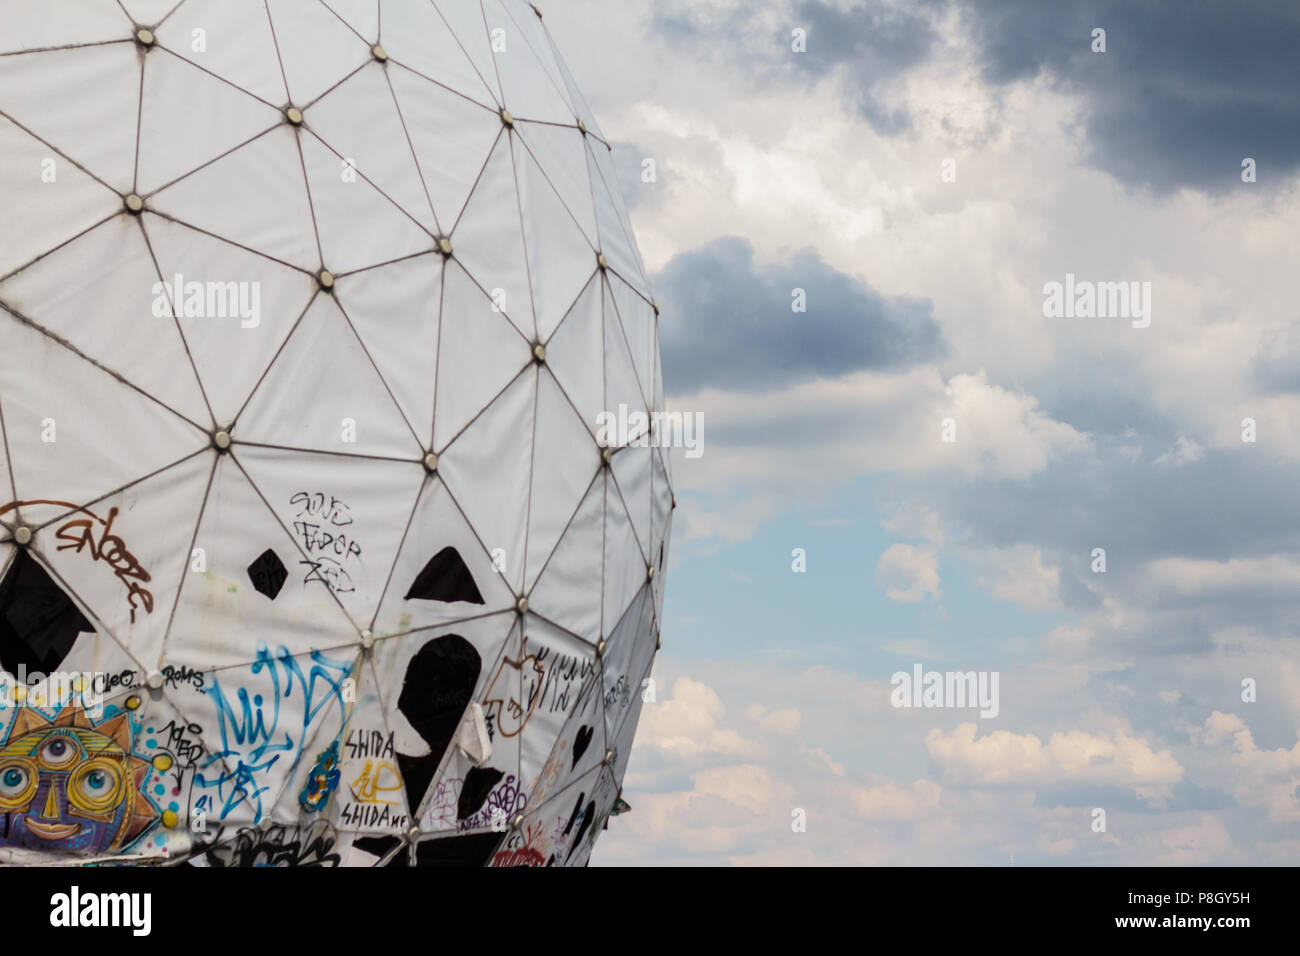 Berlino, Germania - Luglio 2017: cupola radar / radome a NSA abbandonata la stazione in ascolto su Teufelsberg a Berlino, Germania Foto Stock